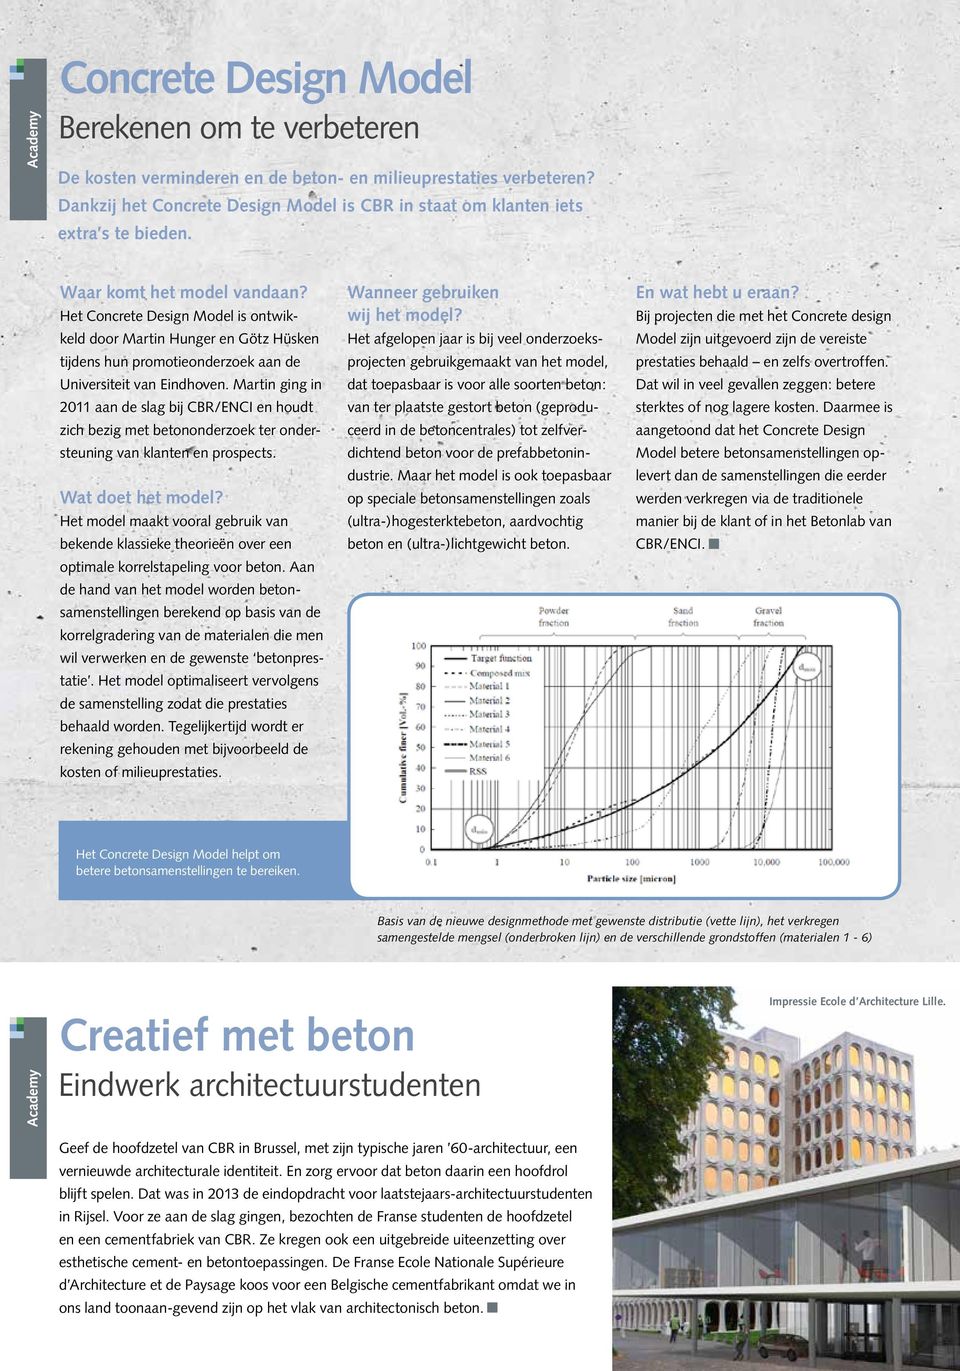 Het Concrete Design Model is ontwikkeld door Martin Hunger en Götz Hüsken tijdens hun promotieonderzoek aan de Universiteit van Eindhoven.